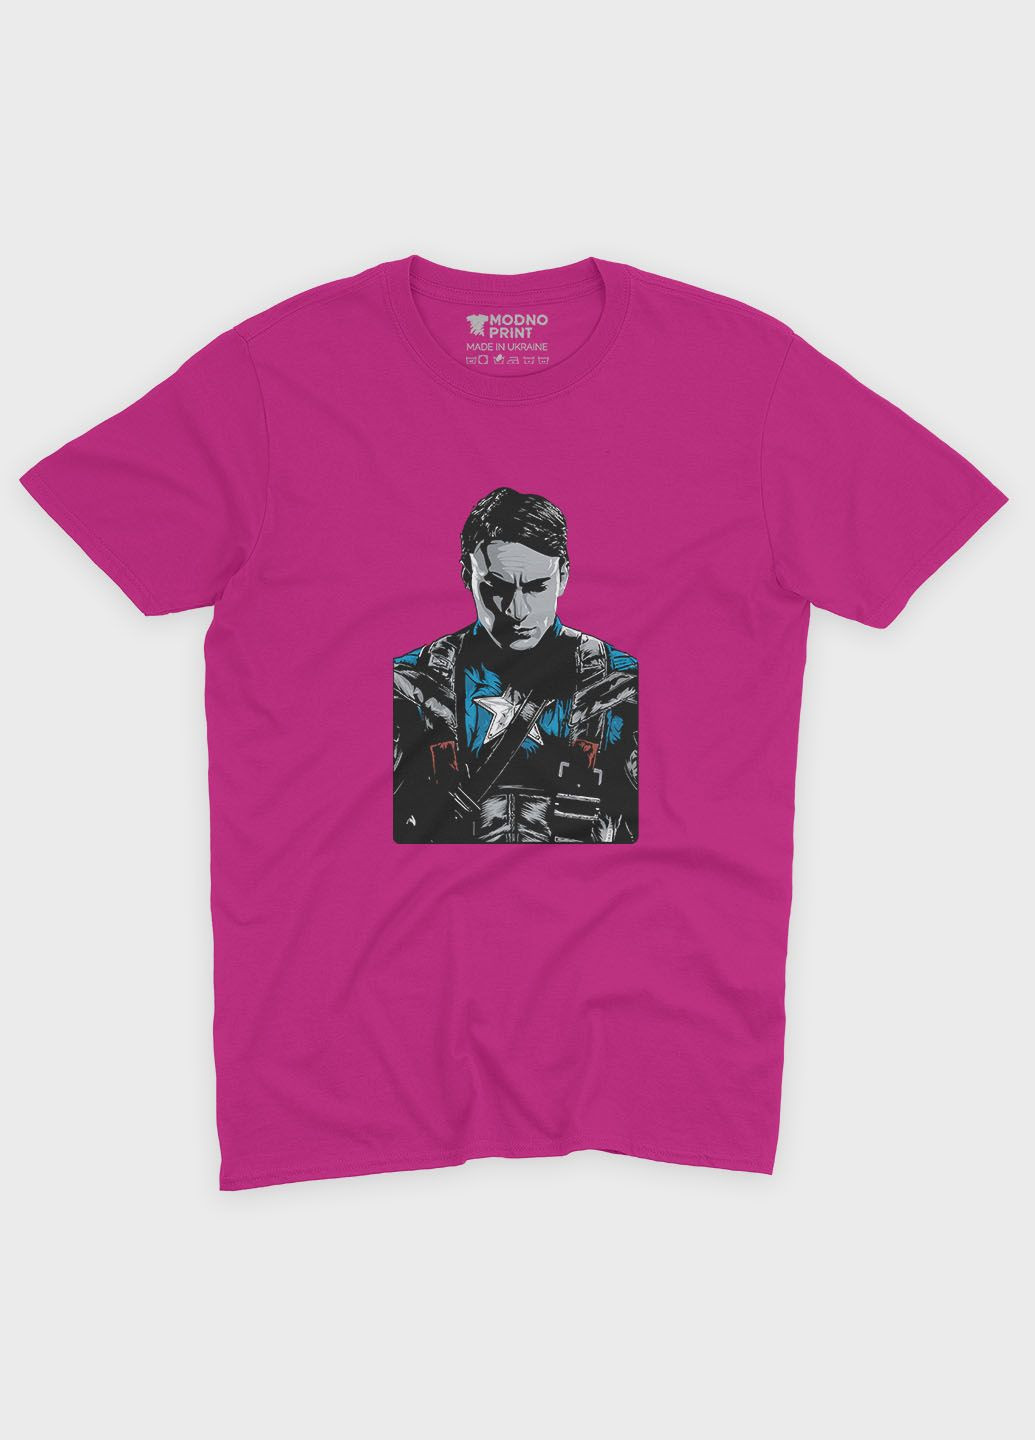 Рожева демісезонна футболка для хлопчика з принтом супергероя - капітан америка (ts001-1-fuxj-006-022-010-b) Modno